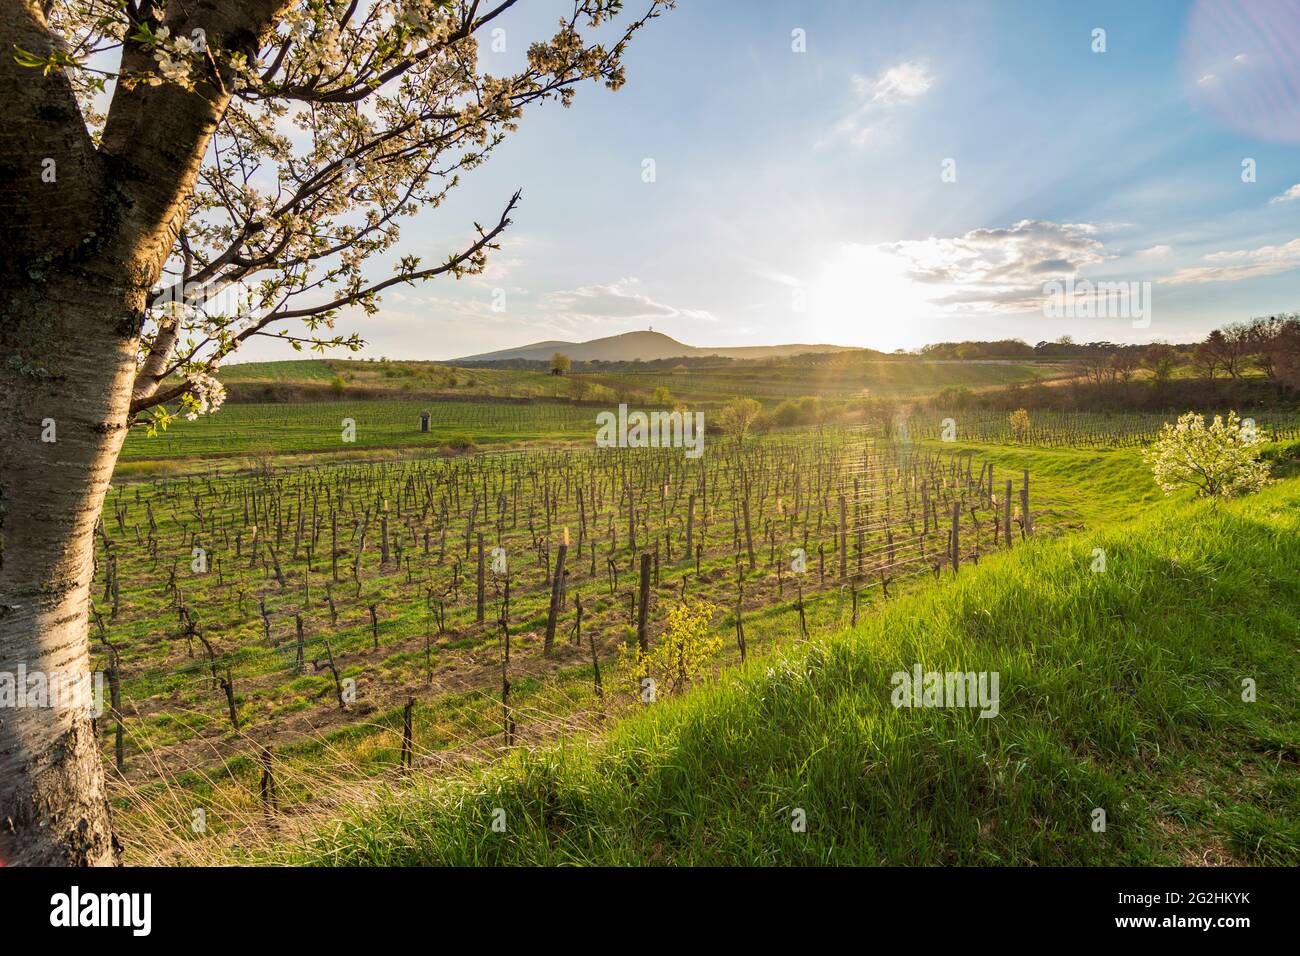 Guntramsdorf, cherry blossom, vineyard, mountain Anninger in Wienerwald / Vienna Woods, Niederösterreich / Lower Austria, Austria Stock Photo